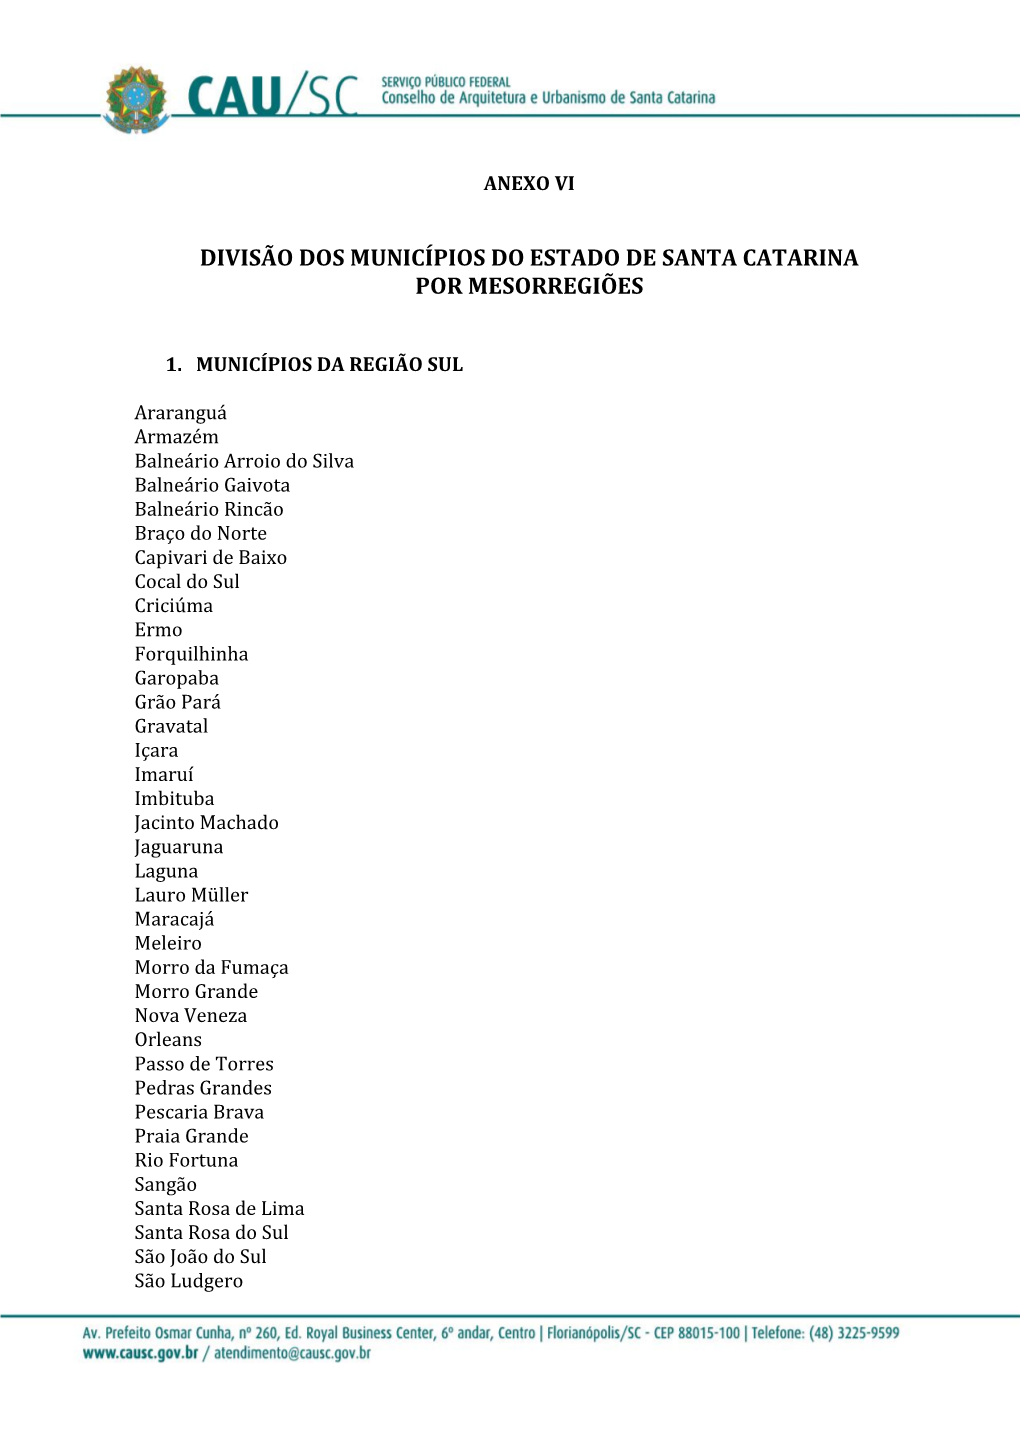 Divisão Dos Municípios Do Estado De Santa Catarina Por Mesorregiões